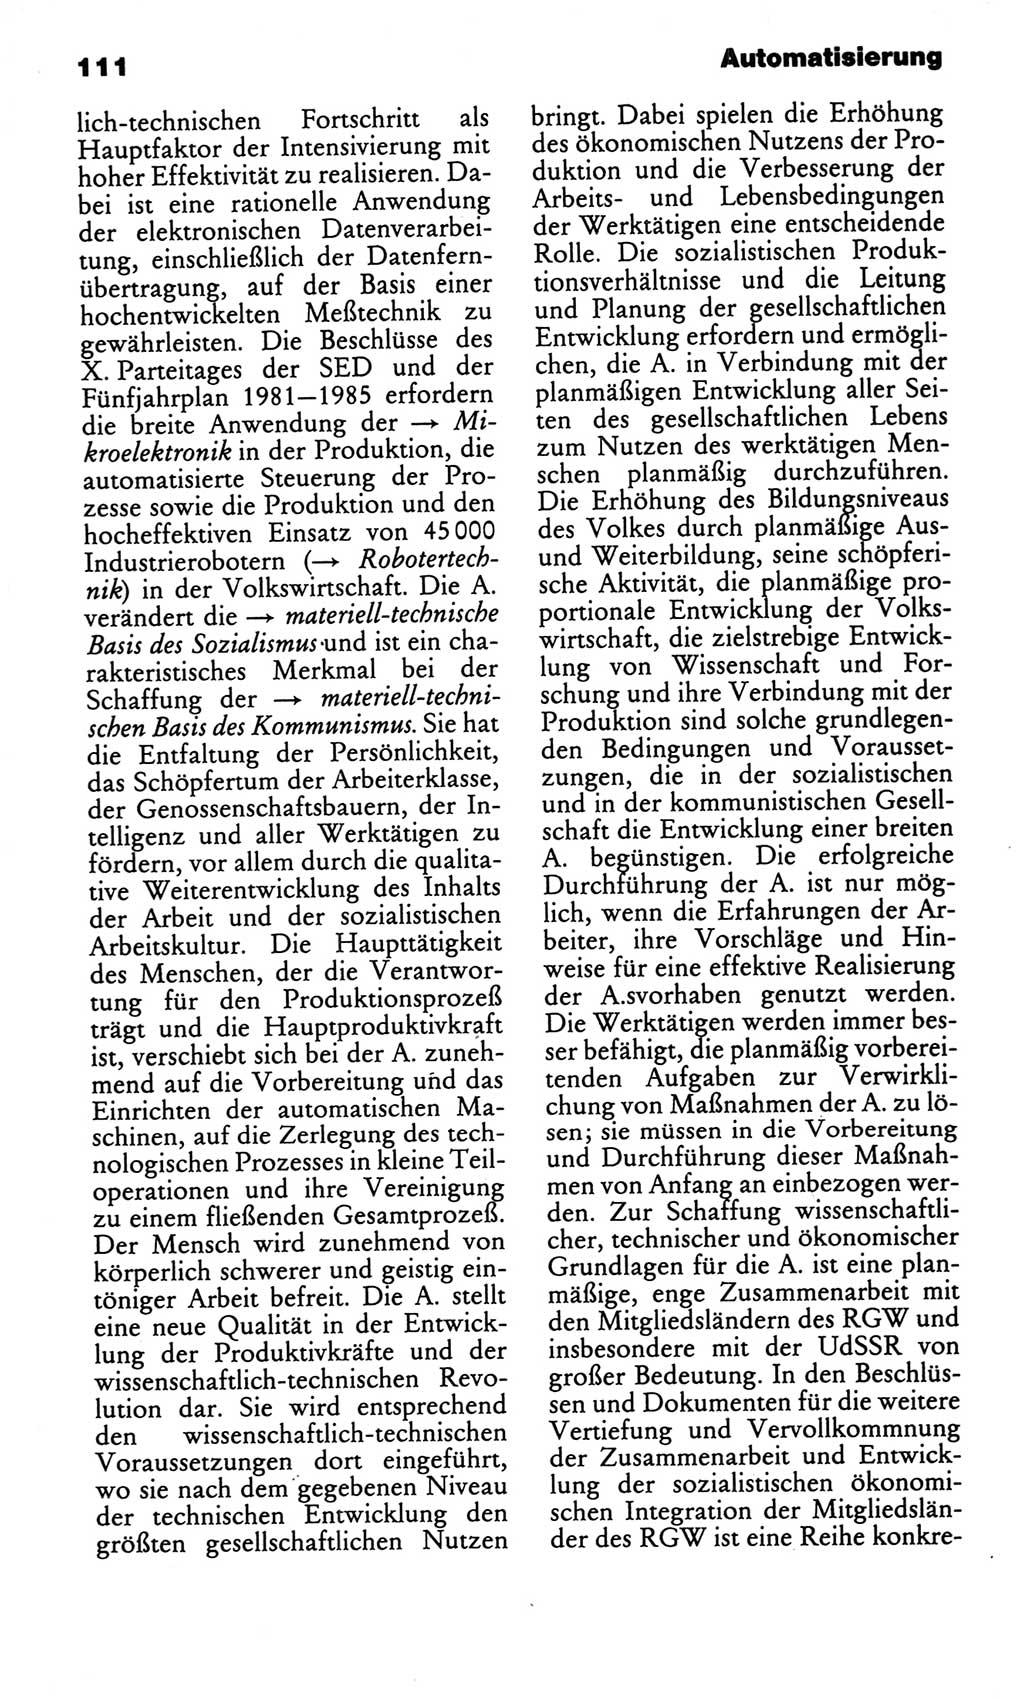 Kleines politisches Wörterbuch [Deutsche Demokratische Republik (DDR)] 1986, Seite 111 (Kl. pol. Wb. DDR 1986, S. 111)